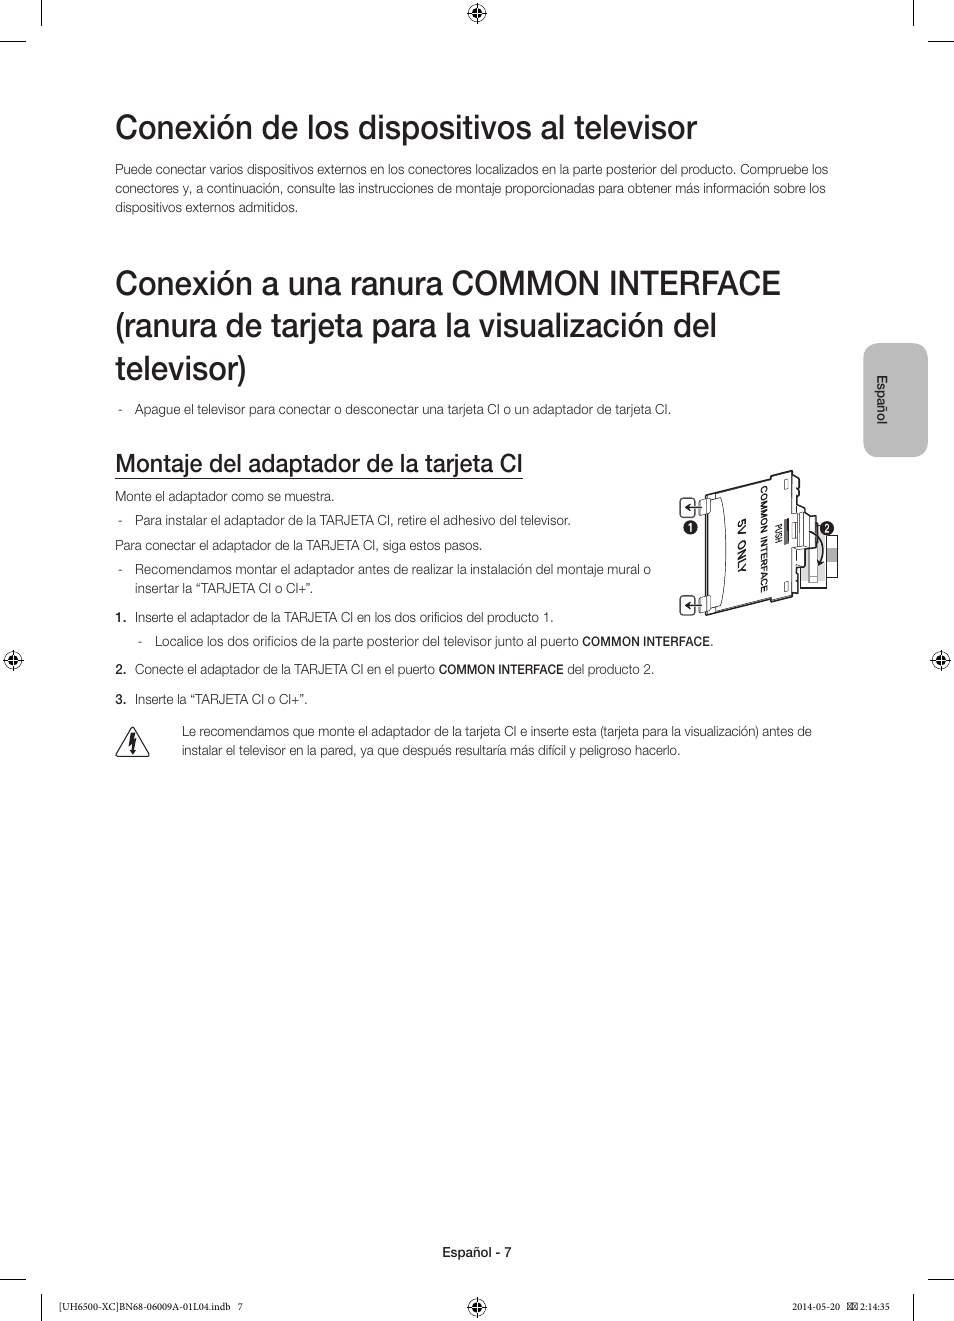 Conexión de los dispositivos al televisor, Montaje del adaptador de la tarjeta  ci | Samsung UE55H6500SL User Manual | Page 51 / 89 | Original mode